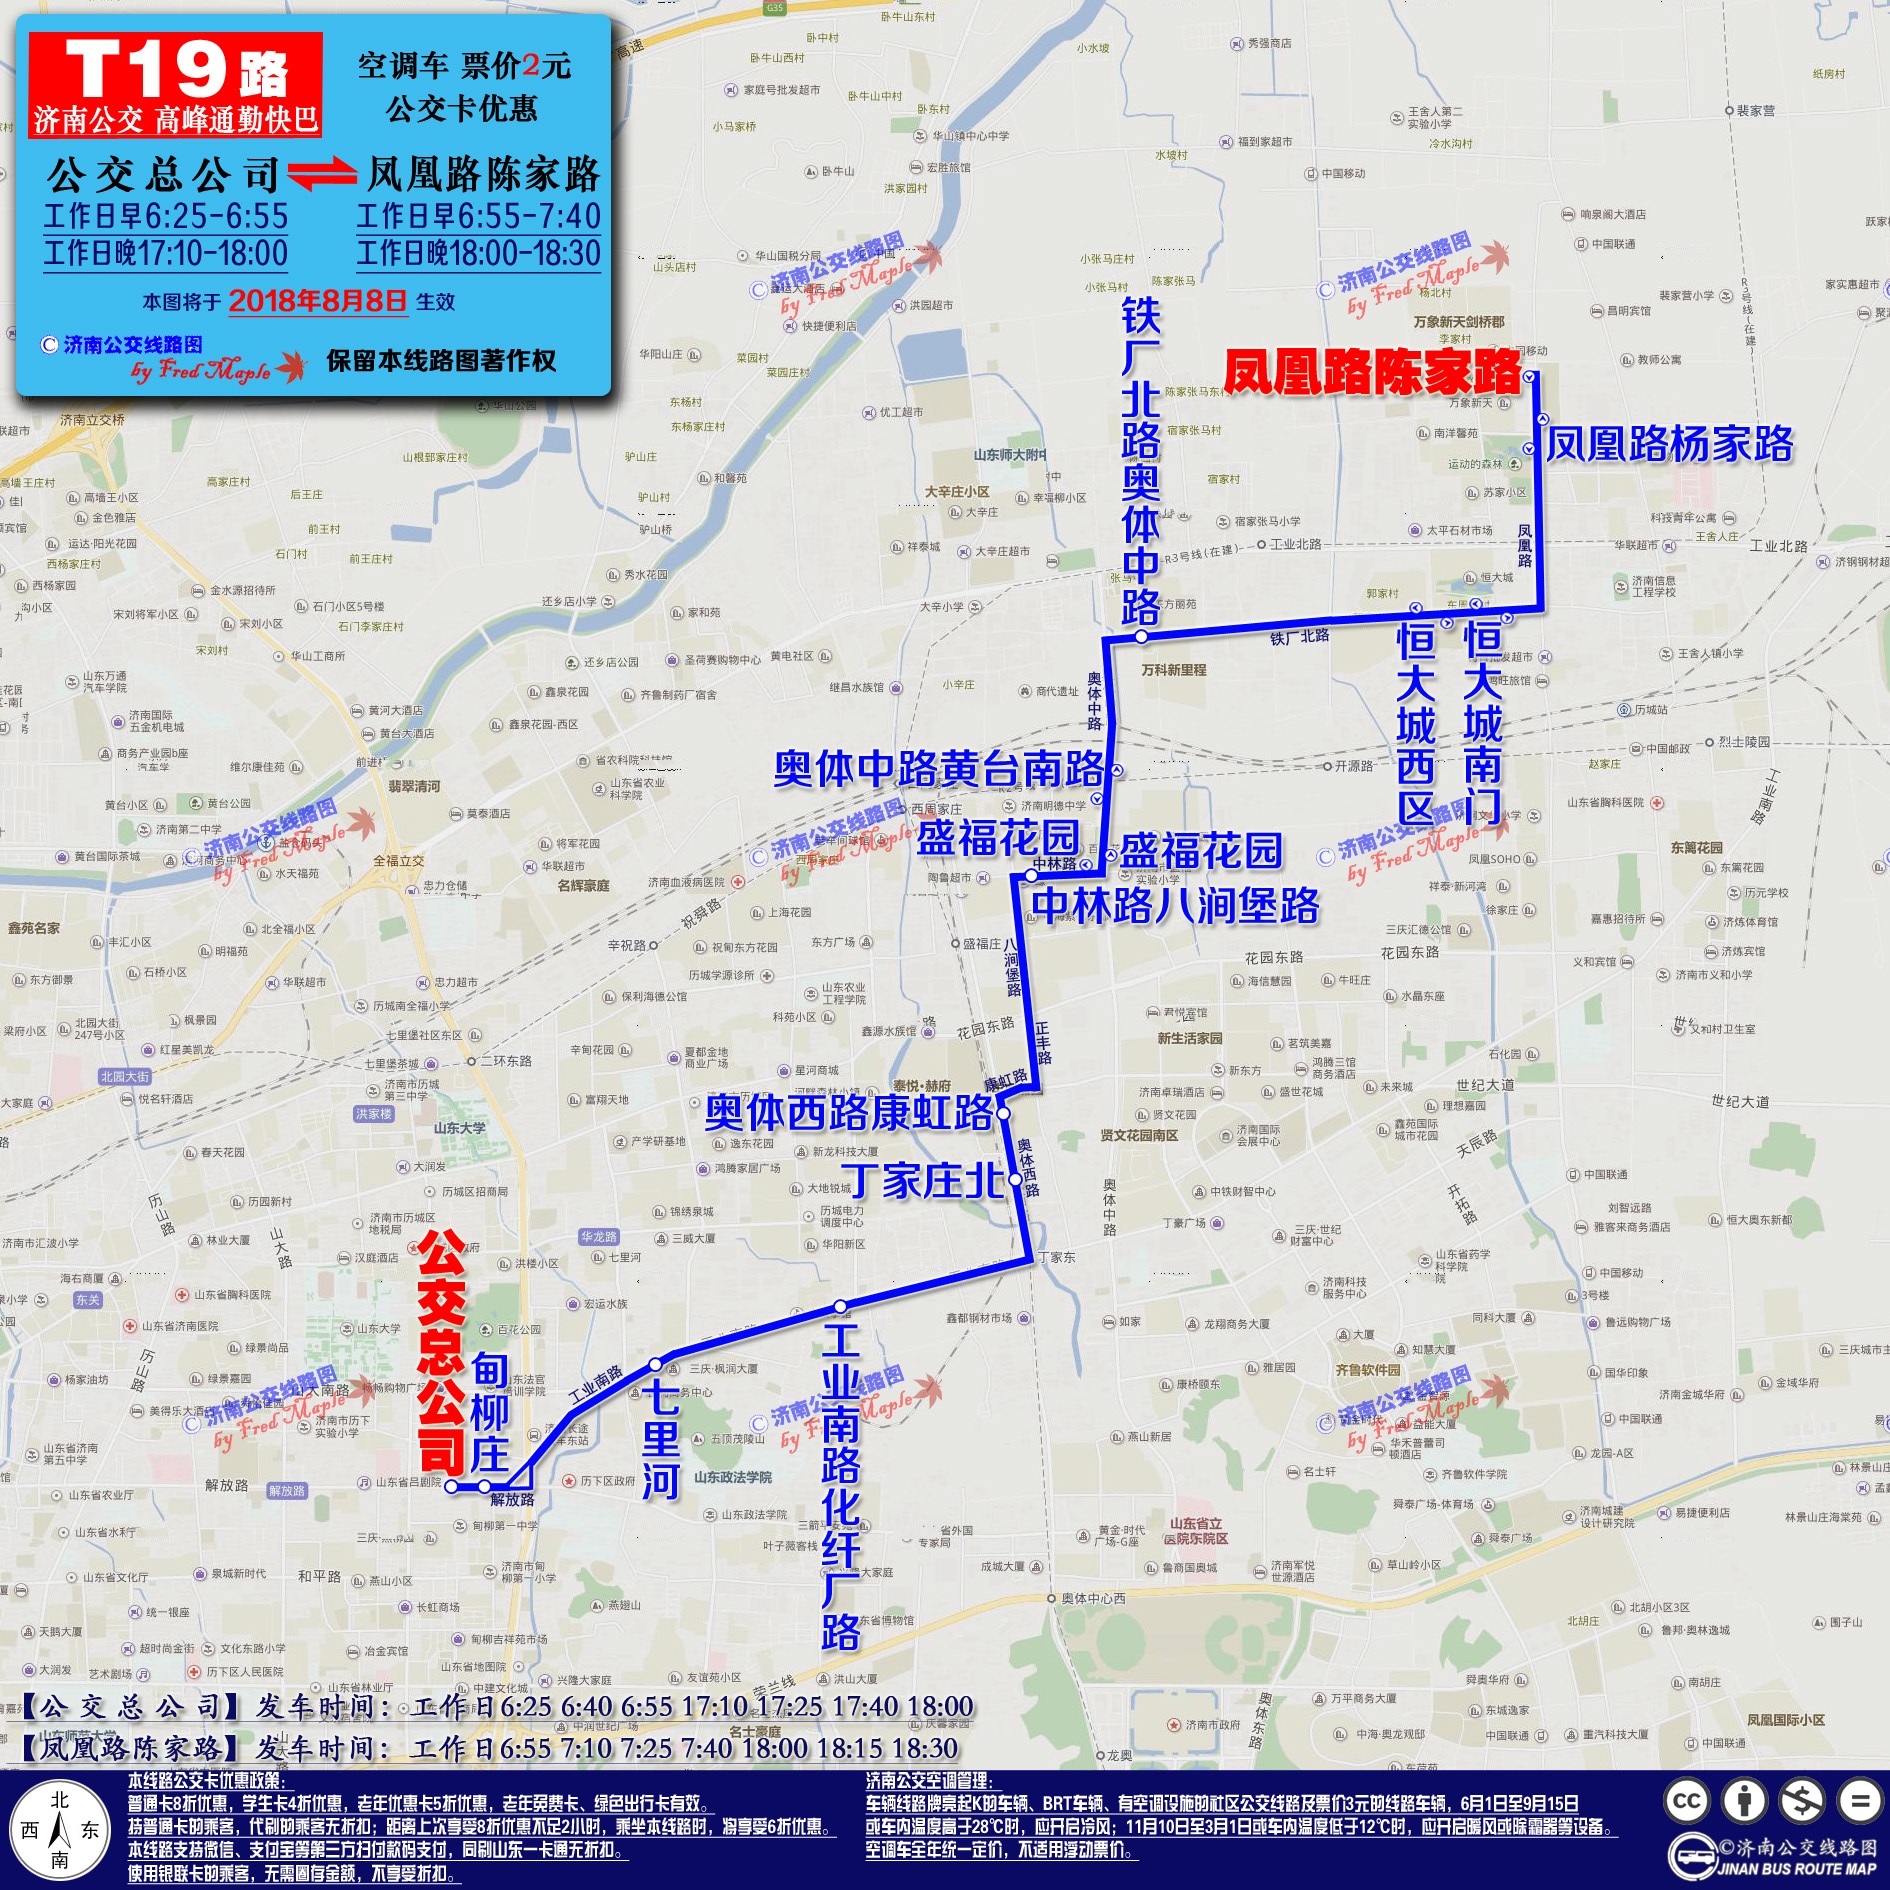 T19路線路圖